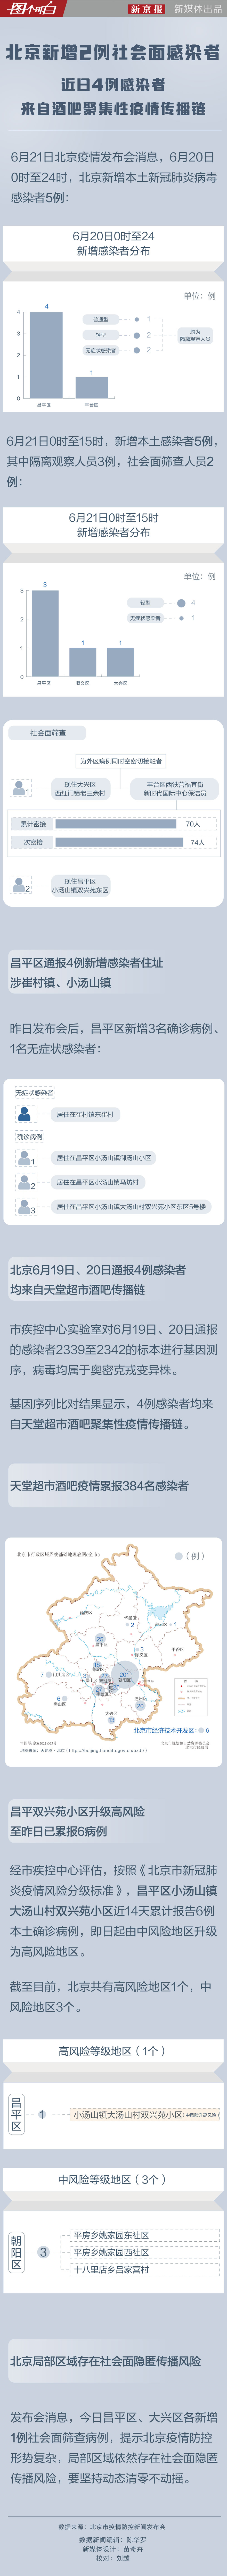 北京新增2例社会面感染者 近日4例感染者来自酒吧疫情传播链